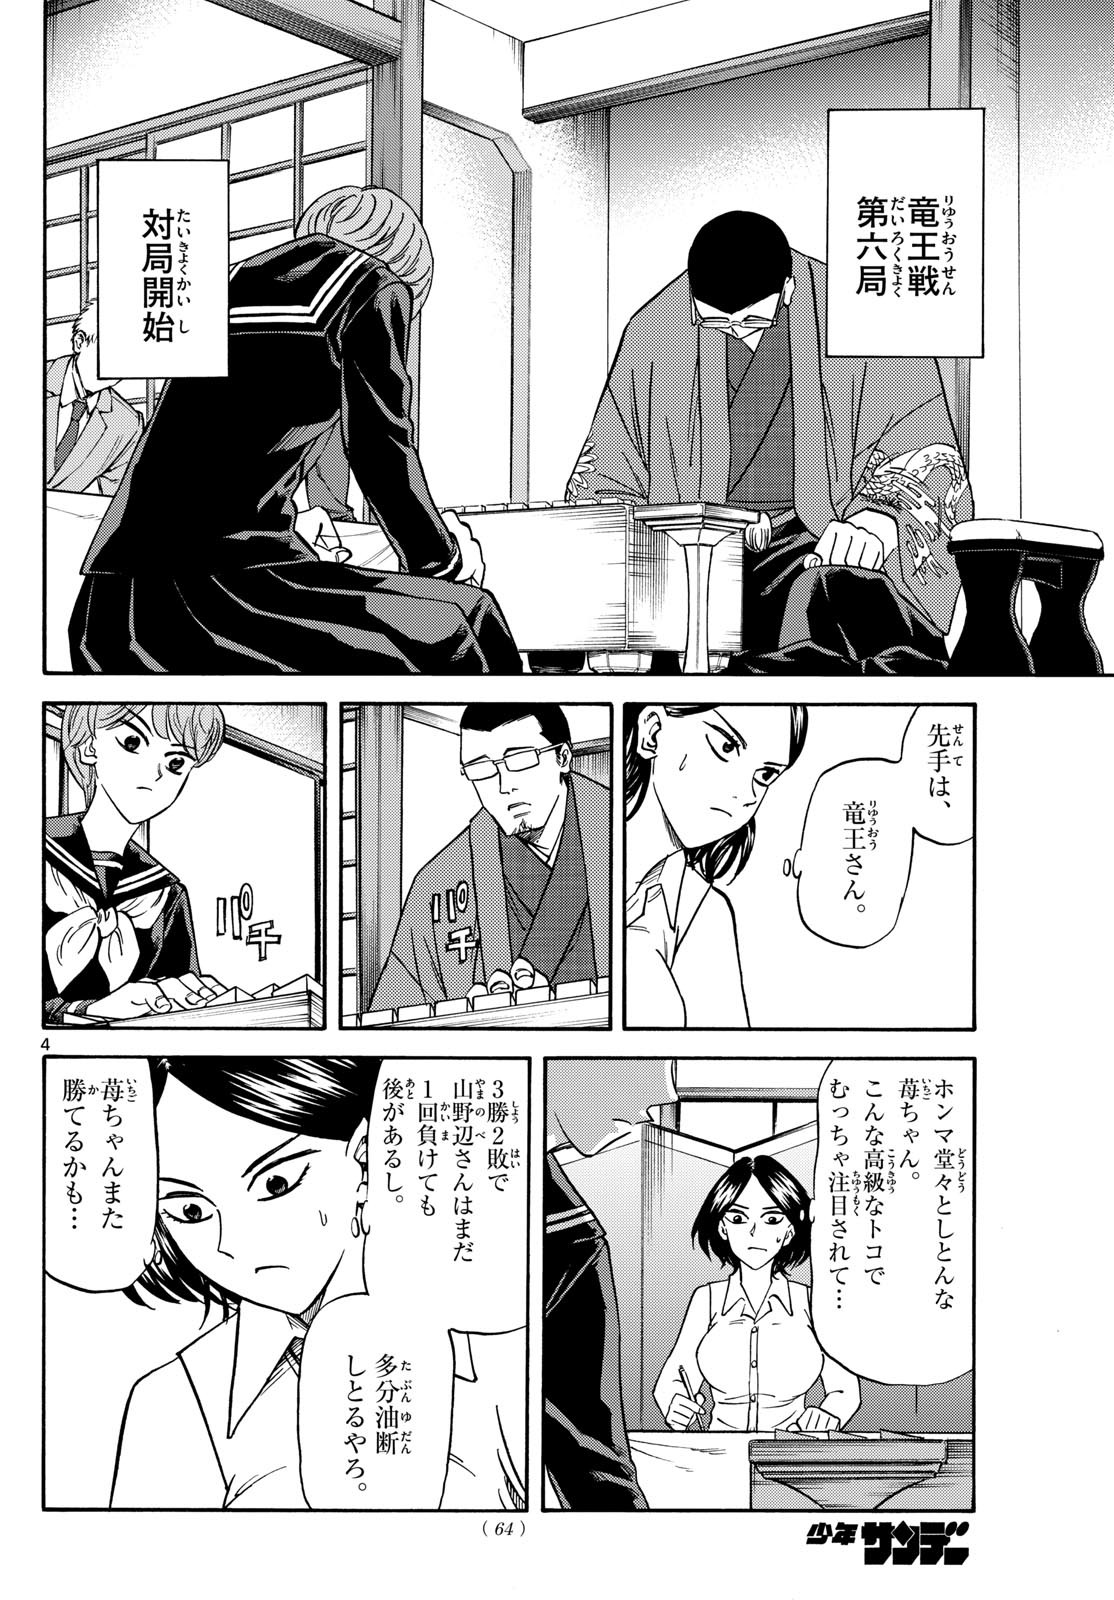 Ryu-to-Ichigo - Chapter 169 - Page 4